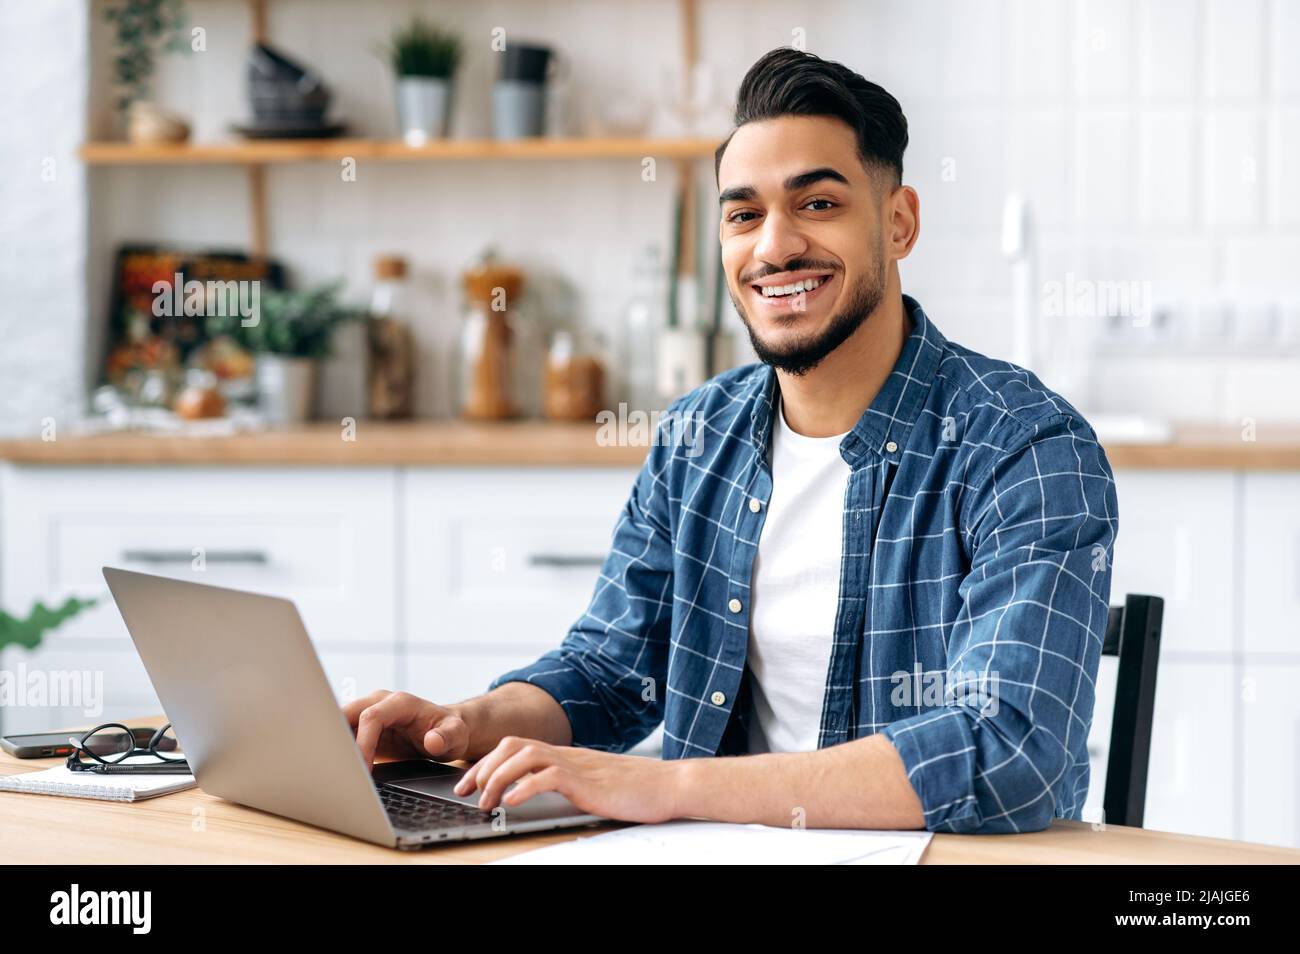 Porträt eines attraktiven positiven indischen oder arabischen Mannes, Unternehmers oder Freiberuflers, der aus der Ferne arbeitet, während er zu Hause in der Küche sitzt, einen Laptop benutzt, ein kreatives, erfolgreiches Projekt entwickelt und lächelt Stockfoto